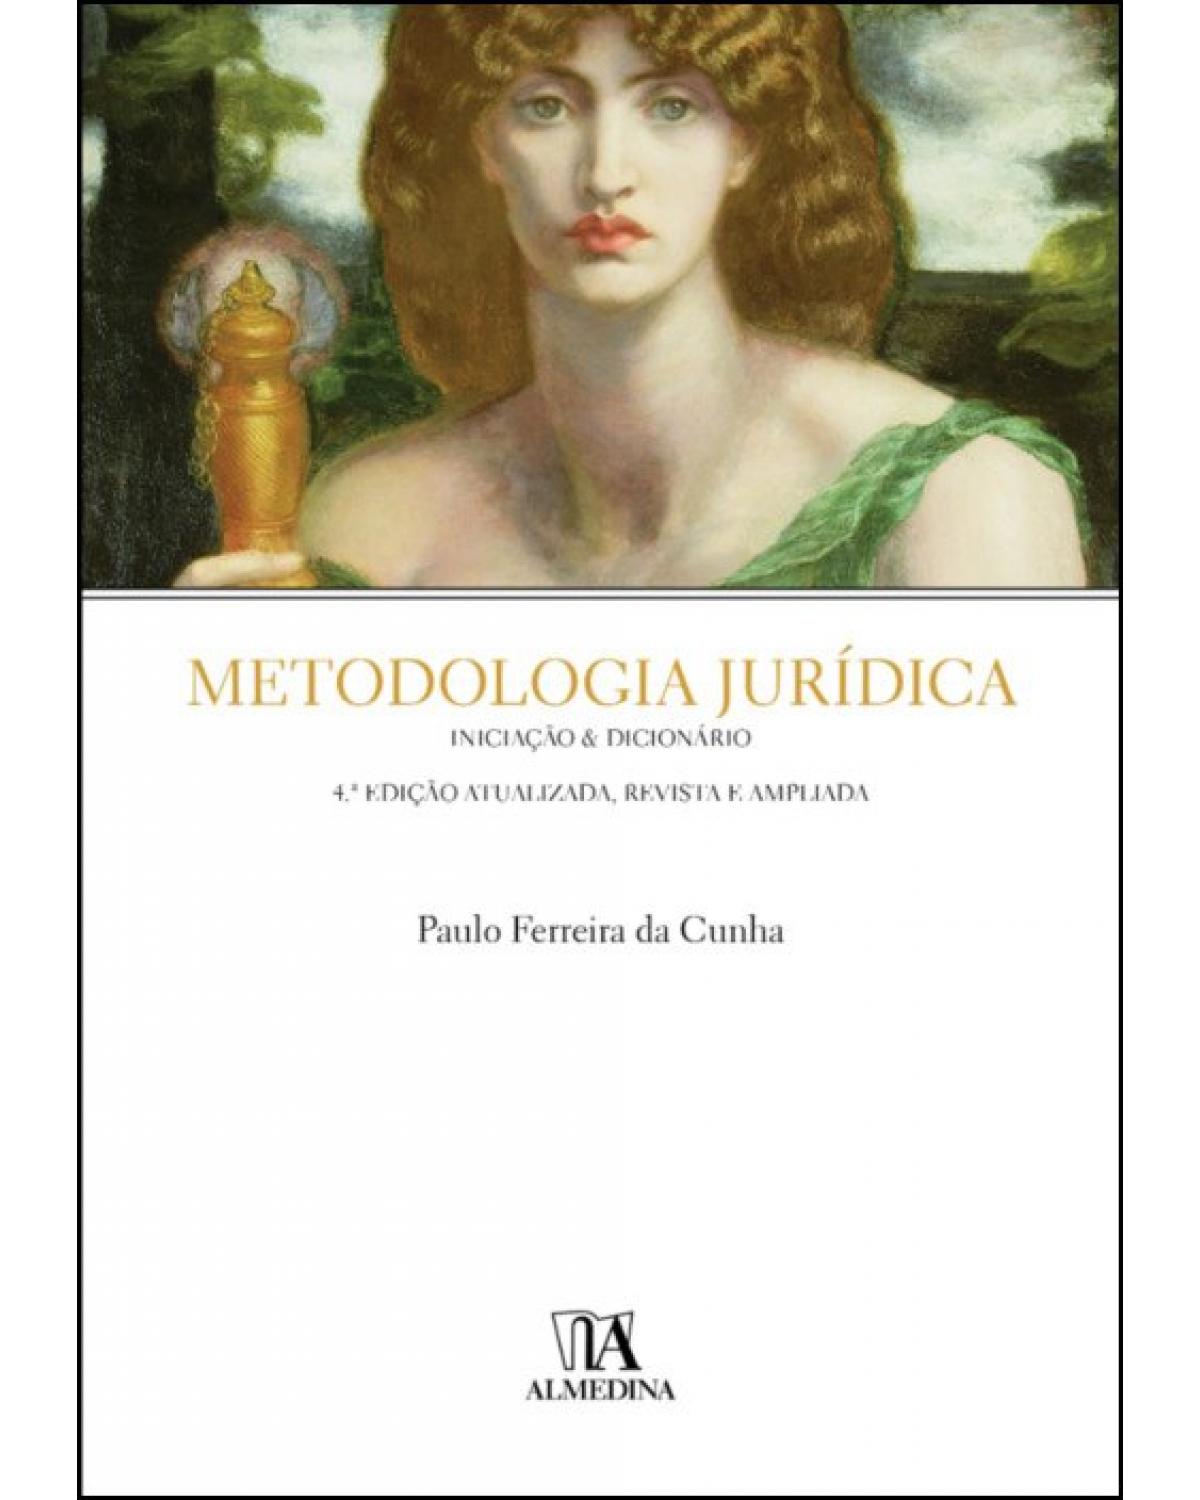 Metodologia jurídica - Iniciação & dicionário - 4ª Edição | 2021